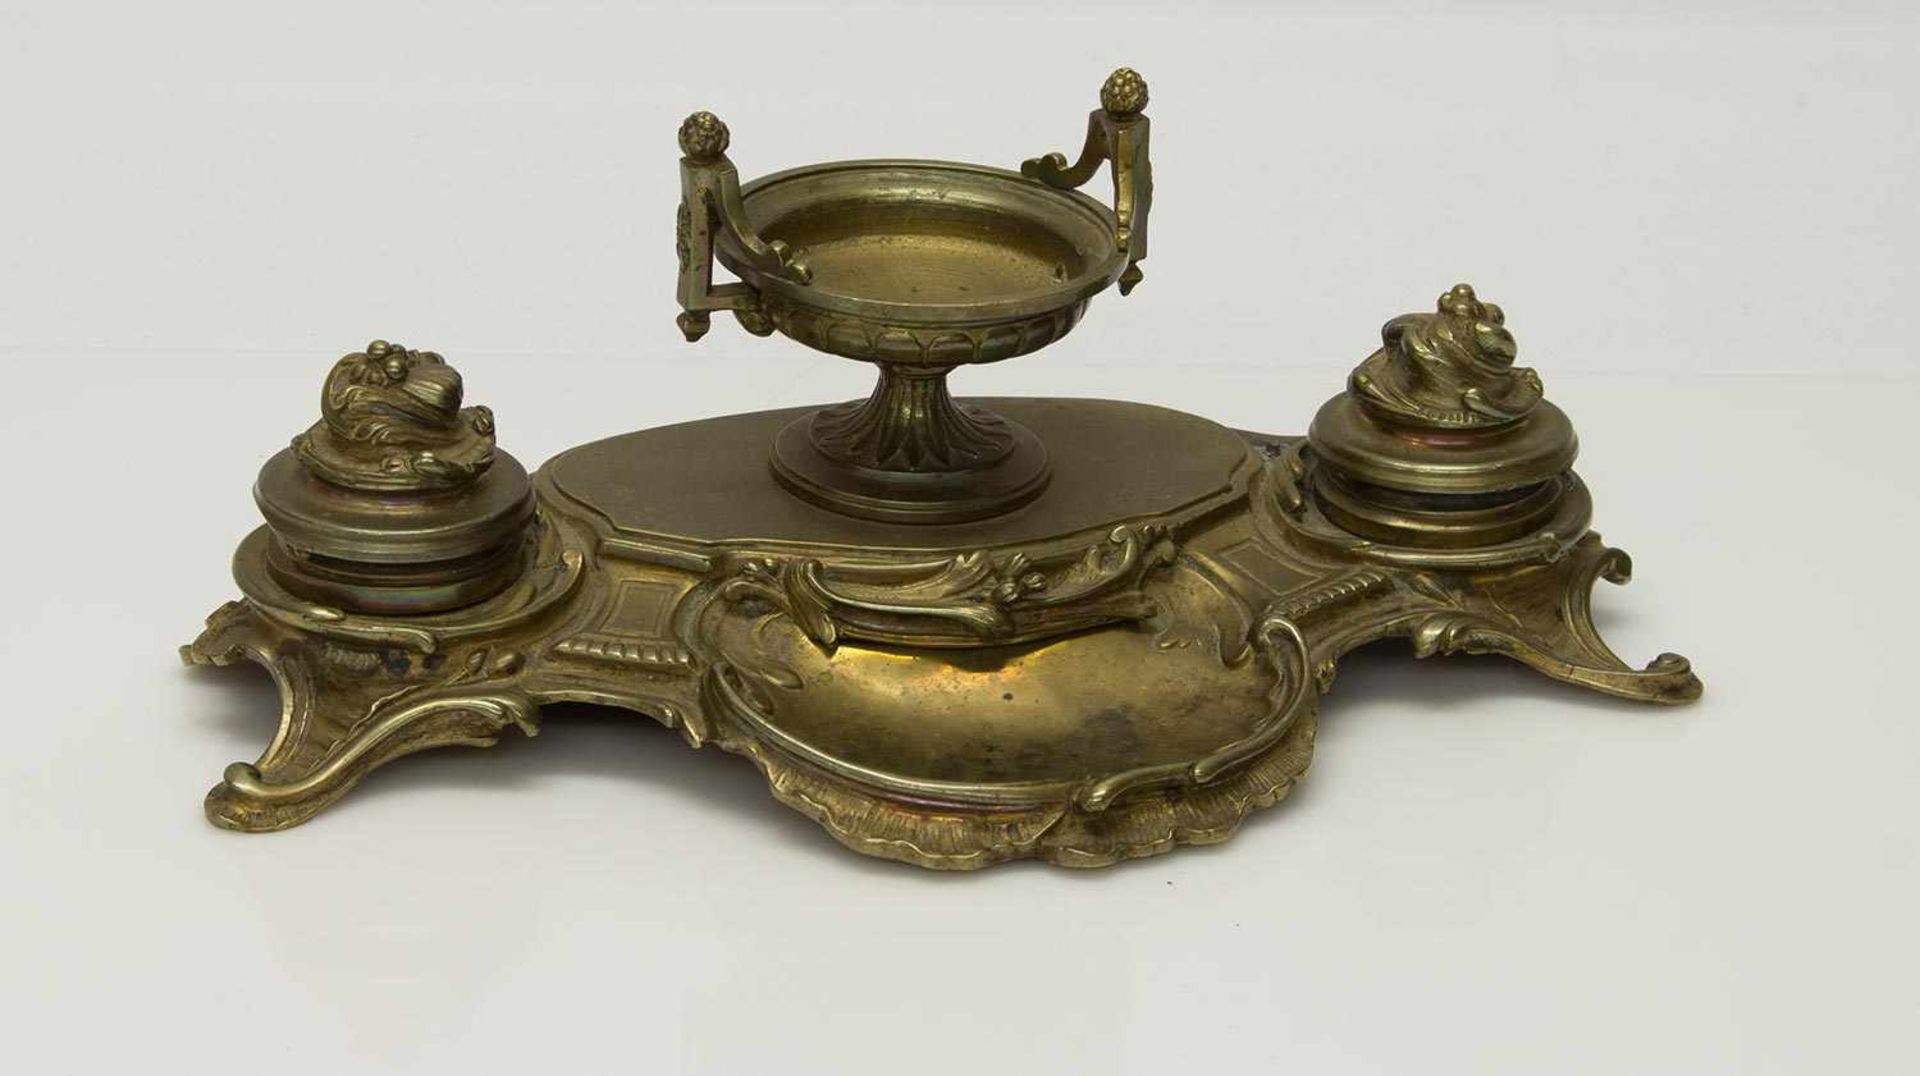 Schreibtisch-Garniturum 1860, Bronze, mit 2 Tintenfässern, 30 x 16 x 12 cm